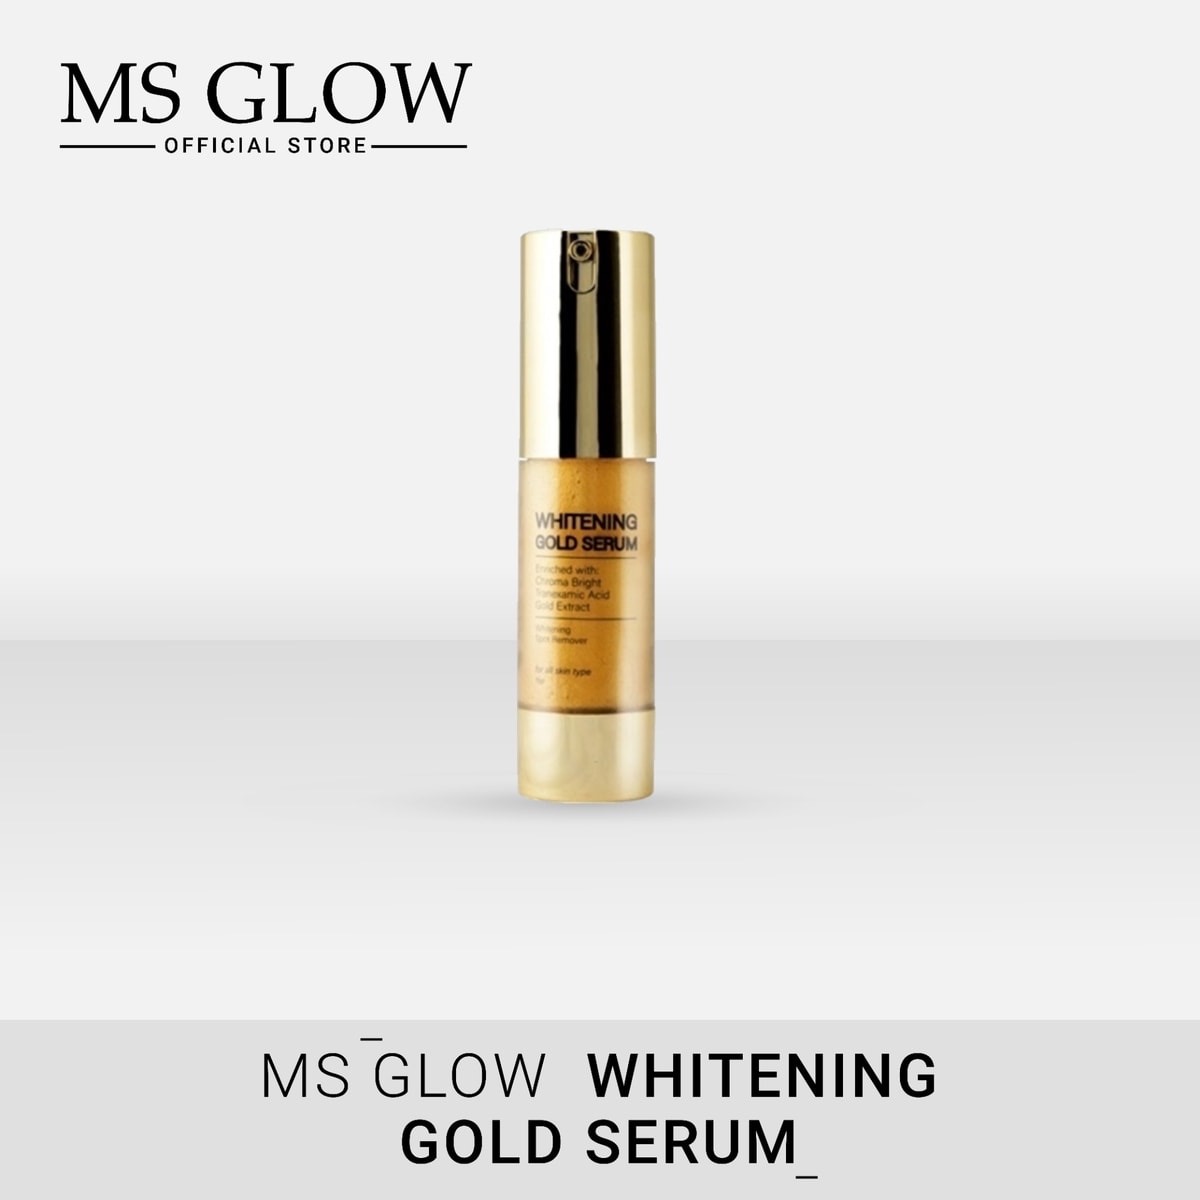 Harga Whitening Gold Serum MS Glow Asli dan Resmi